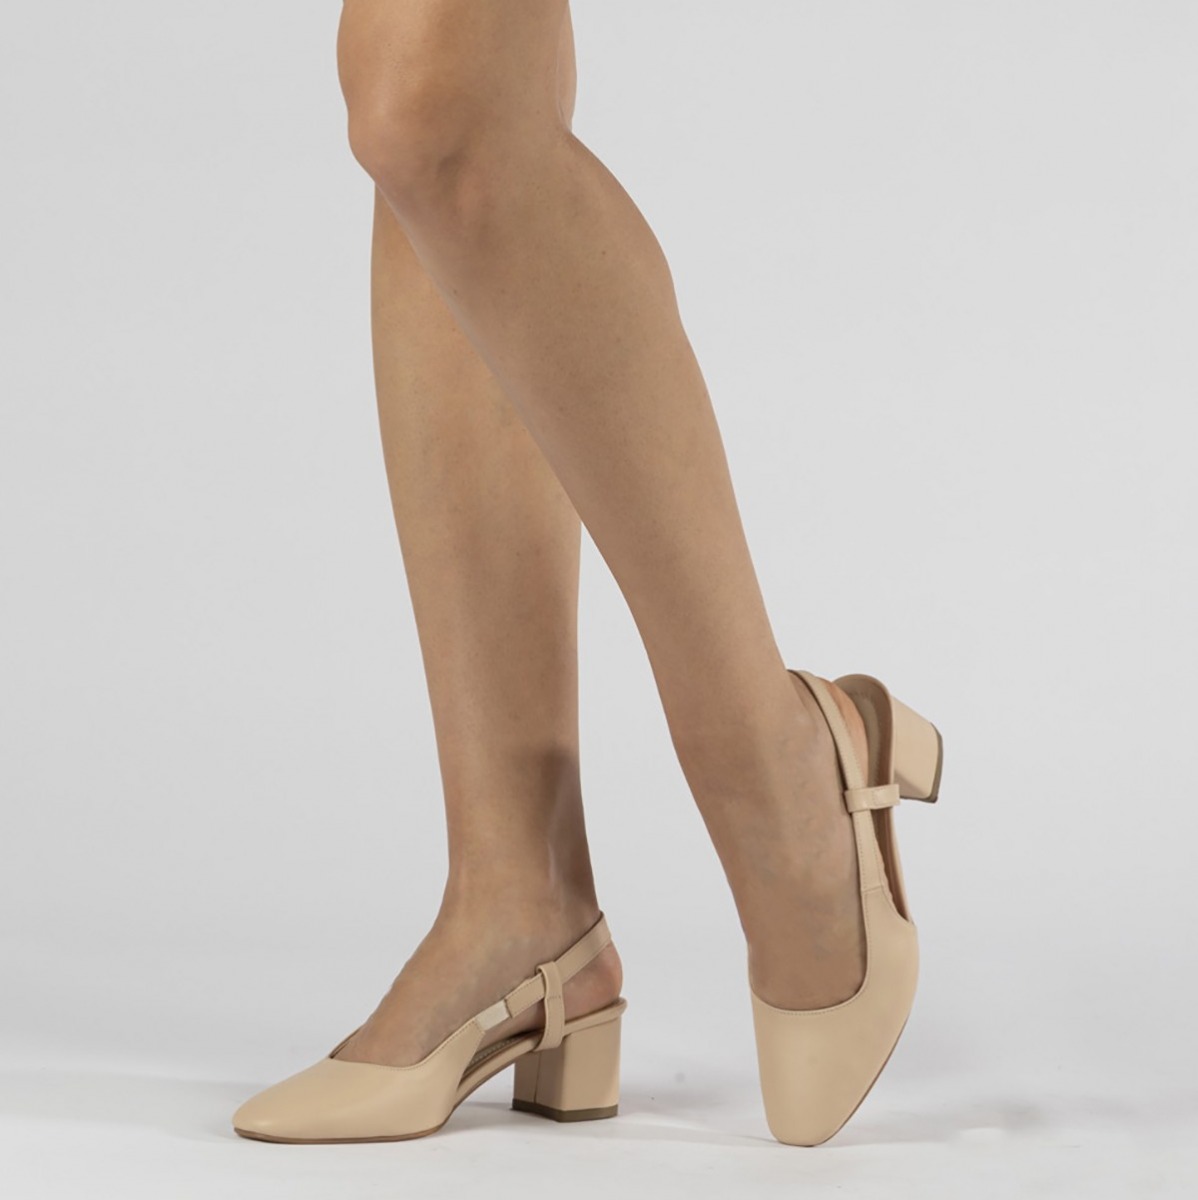 Flo Kadın Klasik Topuklu Ayakkabı. 1